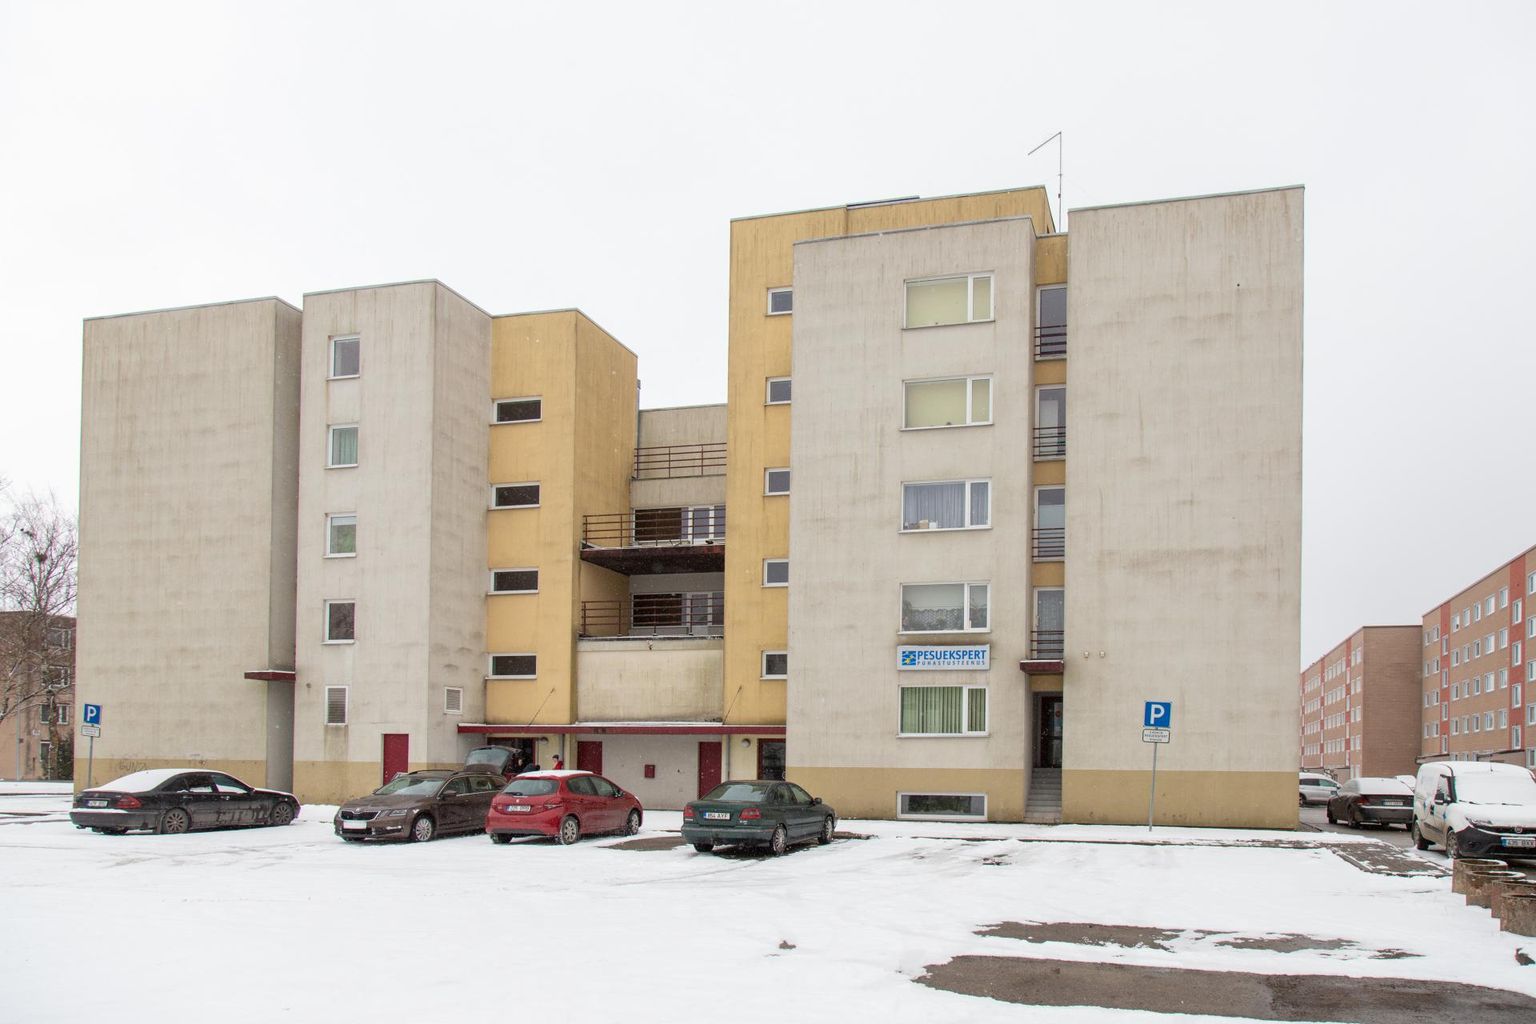 Kaks Ukraina peret on leidnud peatuspaiga Viljandi linnale kuuluvates korterites Männimäel.